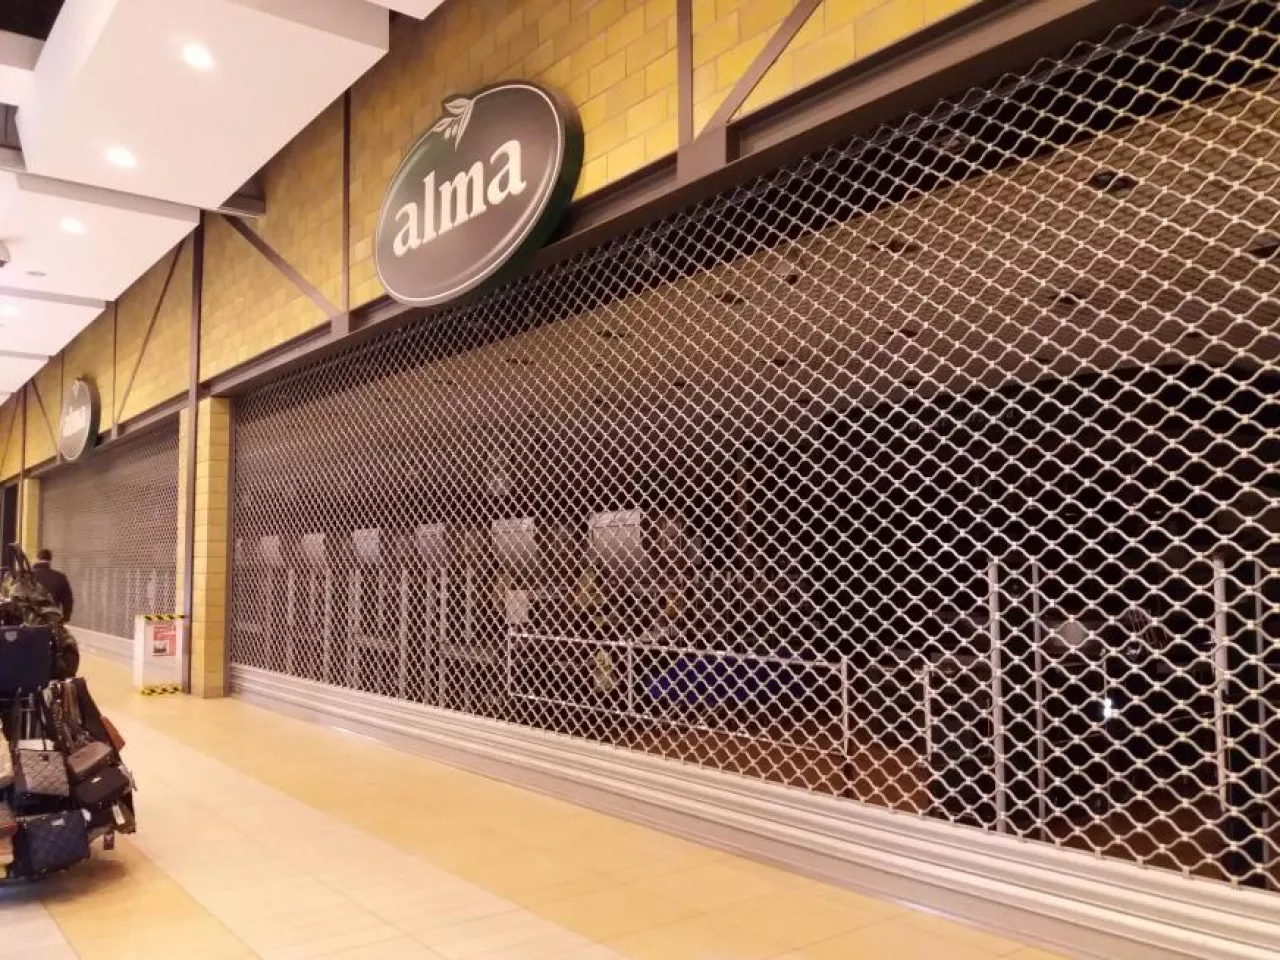 Zamknięty sklep sieci Delikatesów Alma (fot. wiadomoscihandlowe.pl)